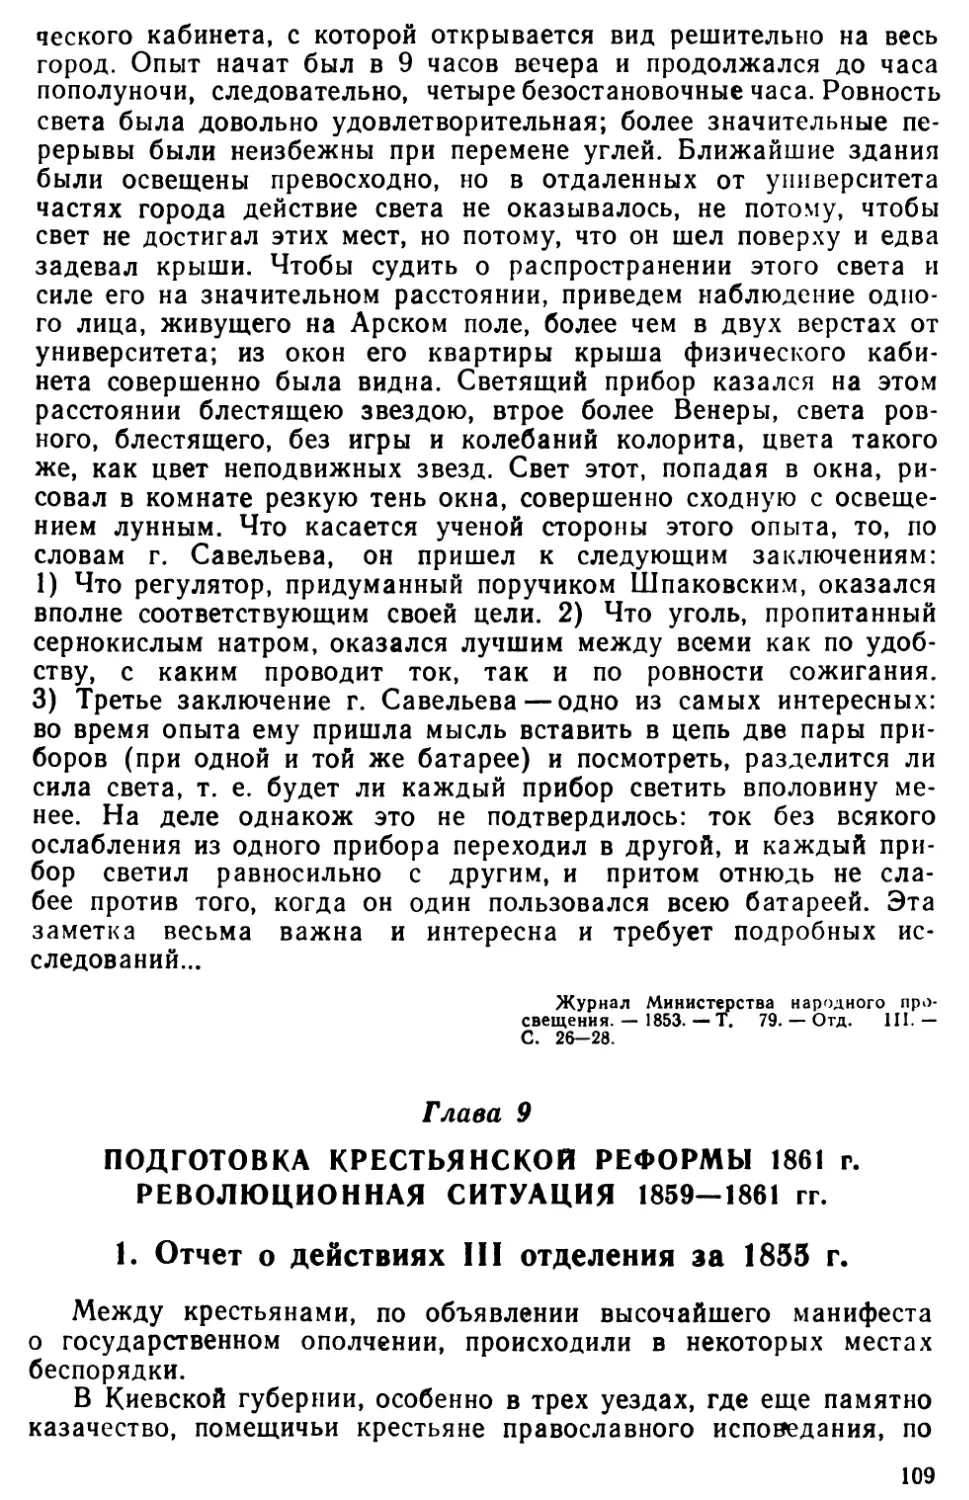 Глава 9. Подготовка крестьянской реформы 1861 г. Революционная ситуация 1859—1861 гг